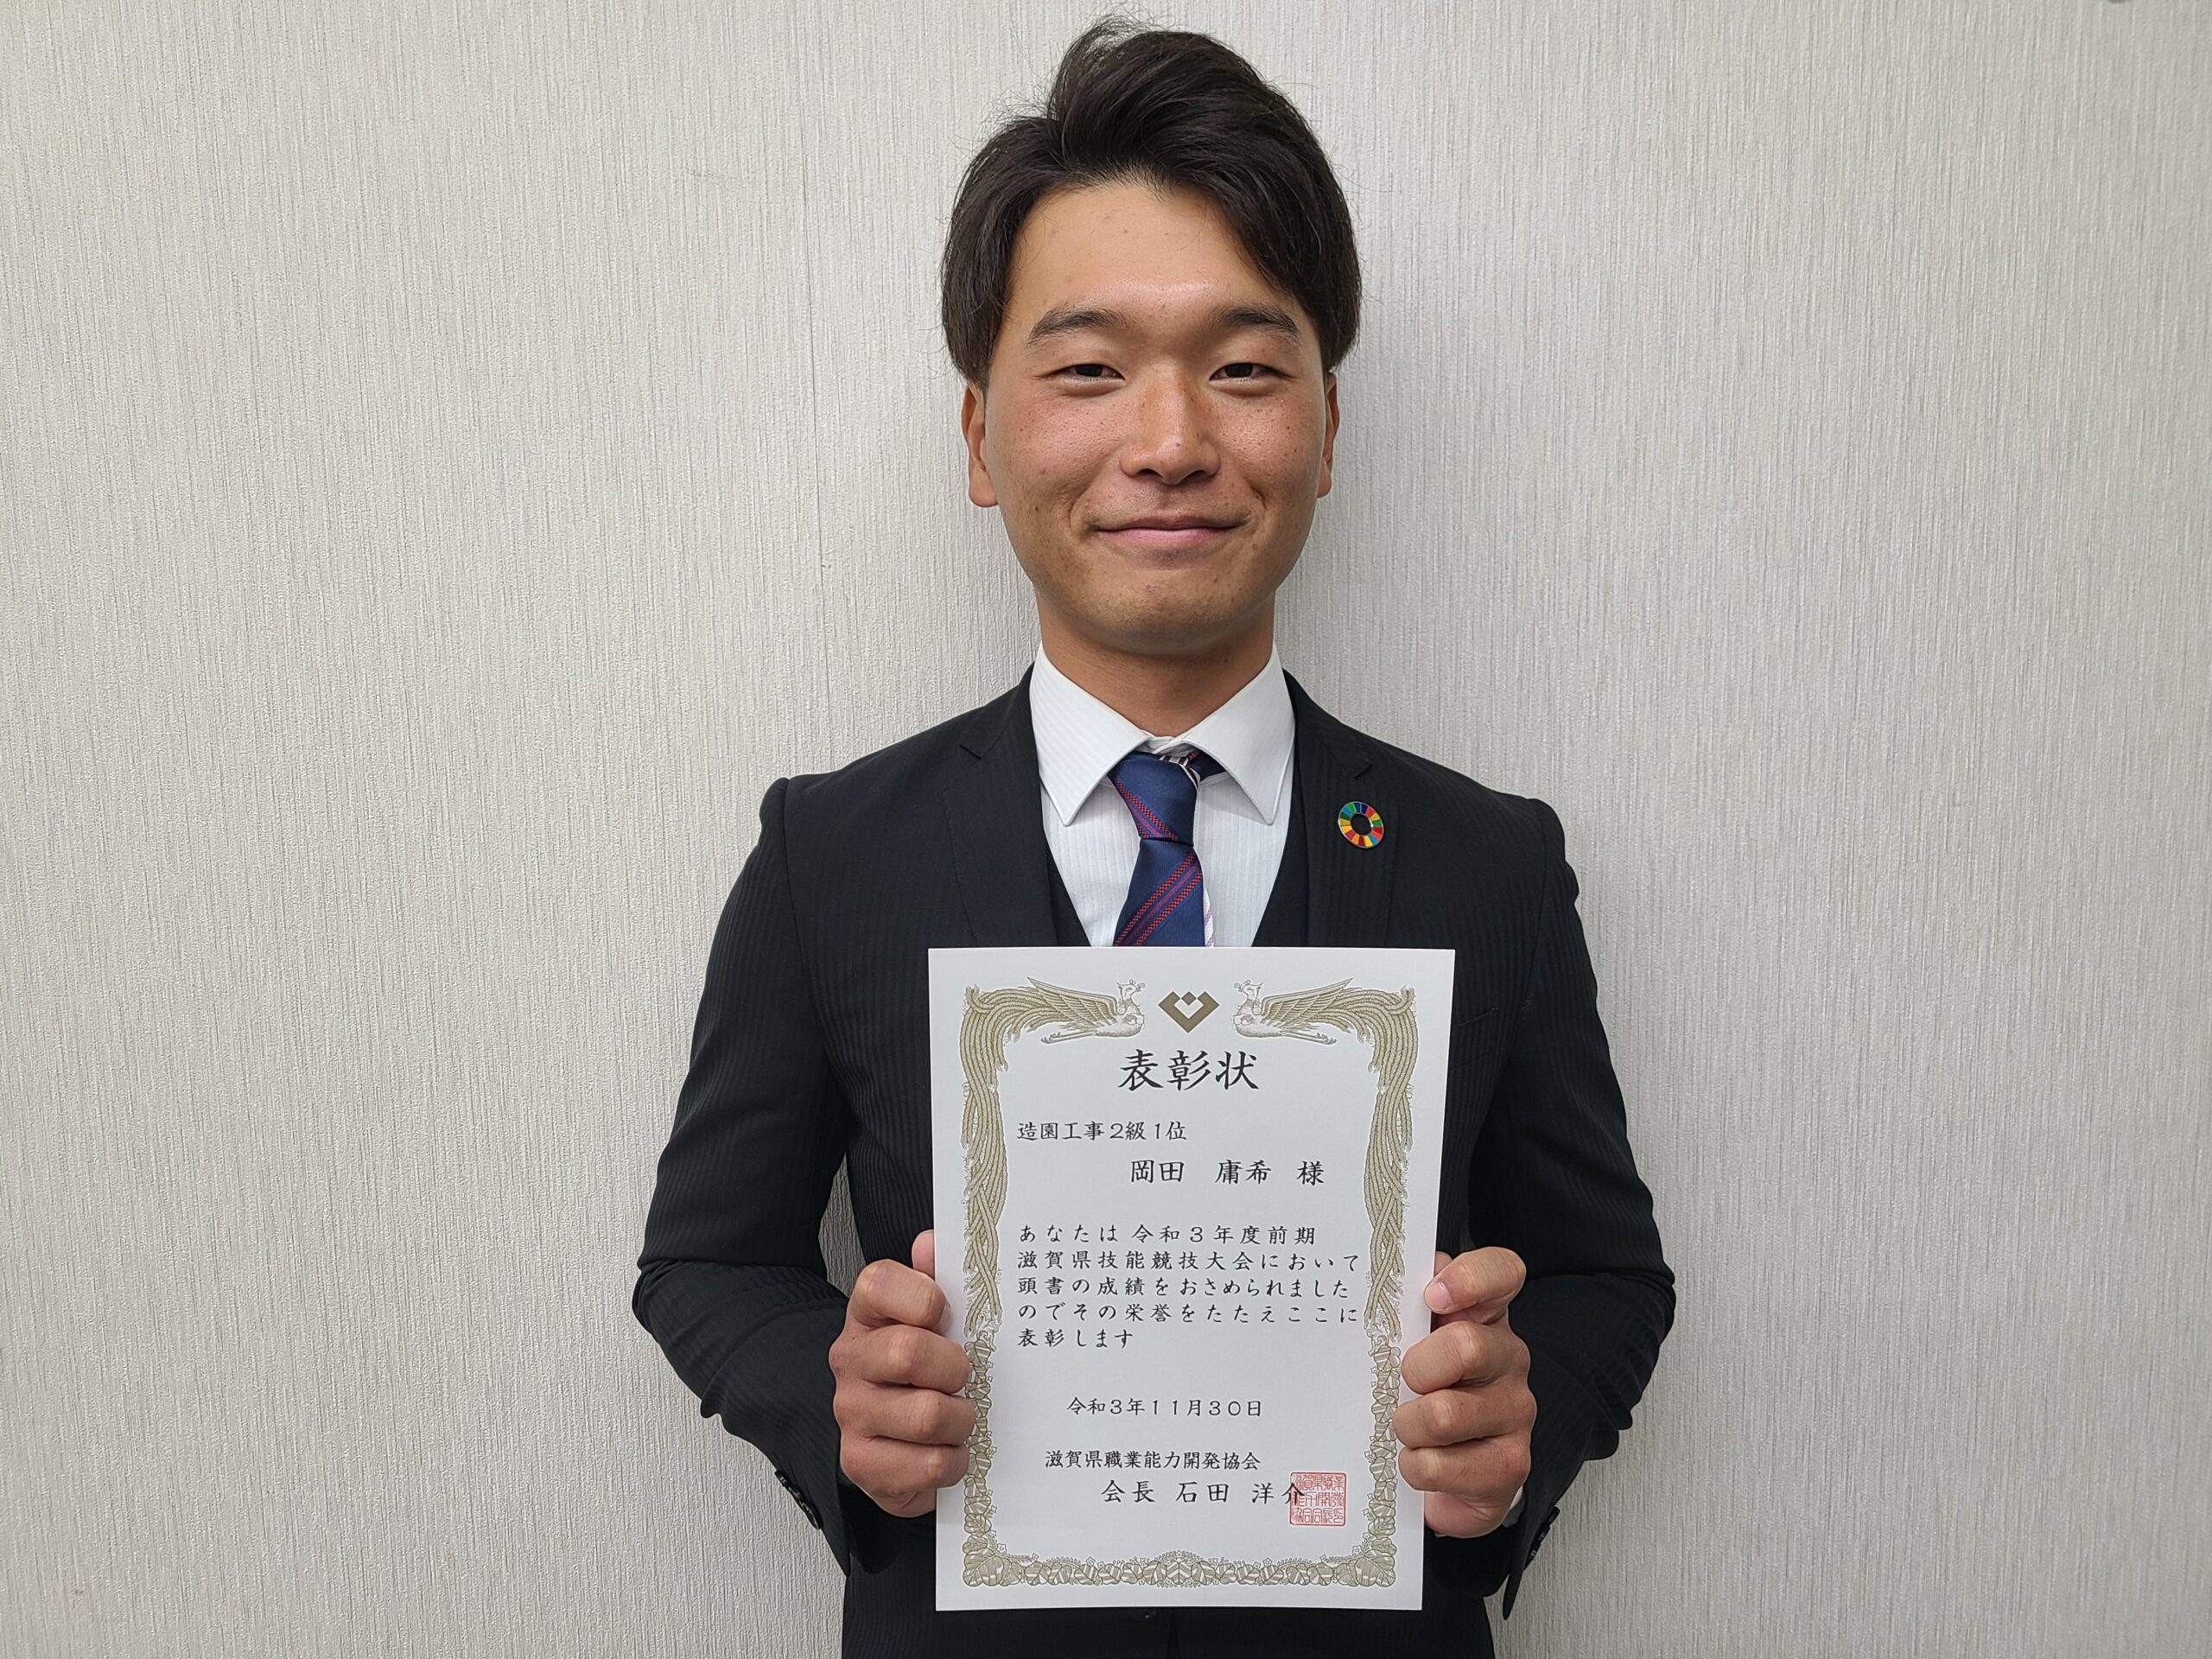 滋賀県技能競技大会成績優秀者として表彰されました！